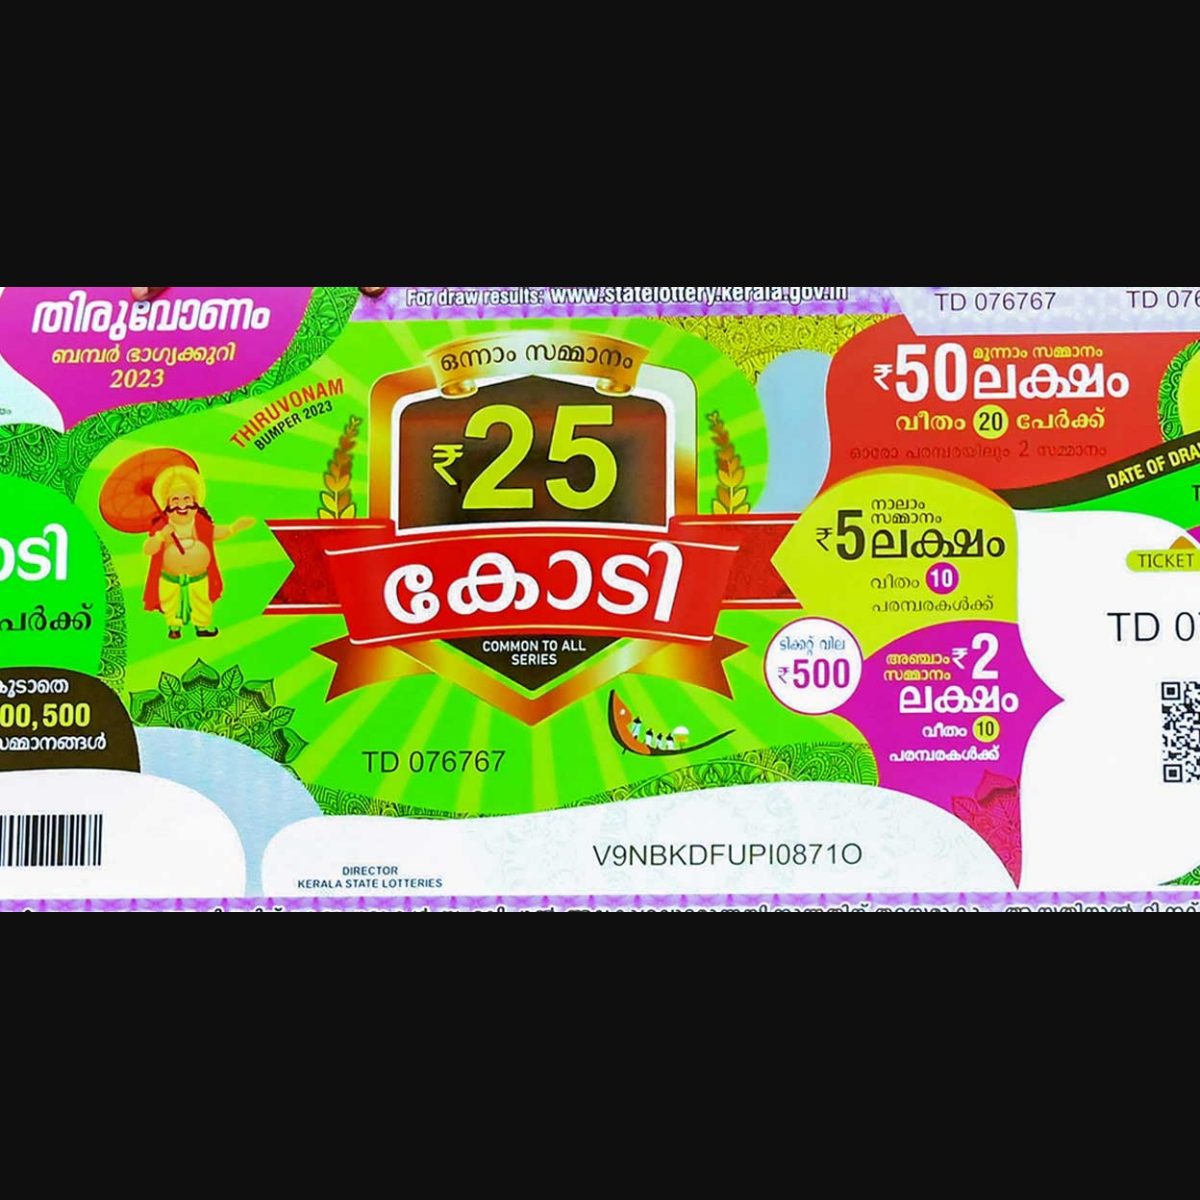 Buy Kerala Lottery Tickets Online Keralapaperlotteryonline.in